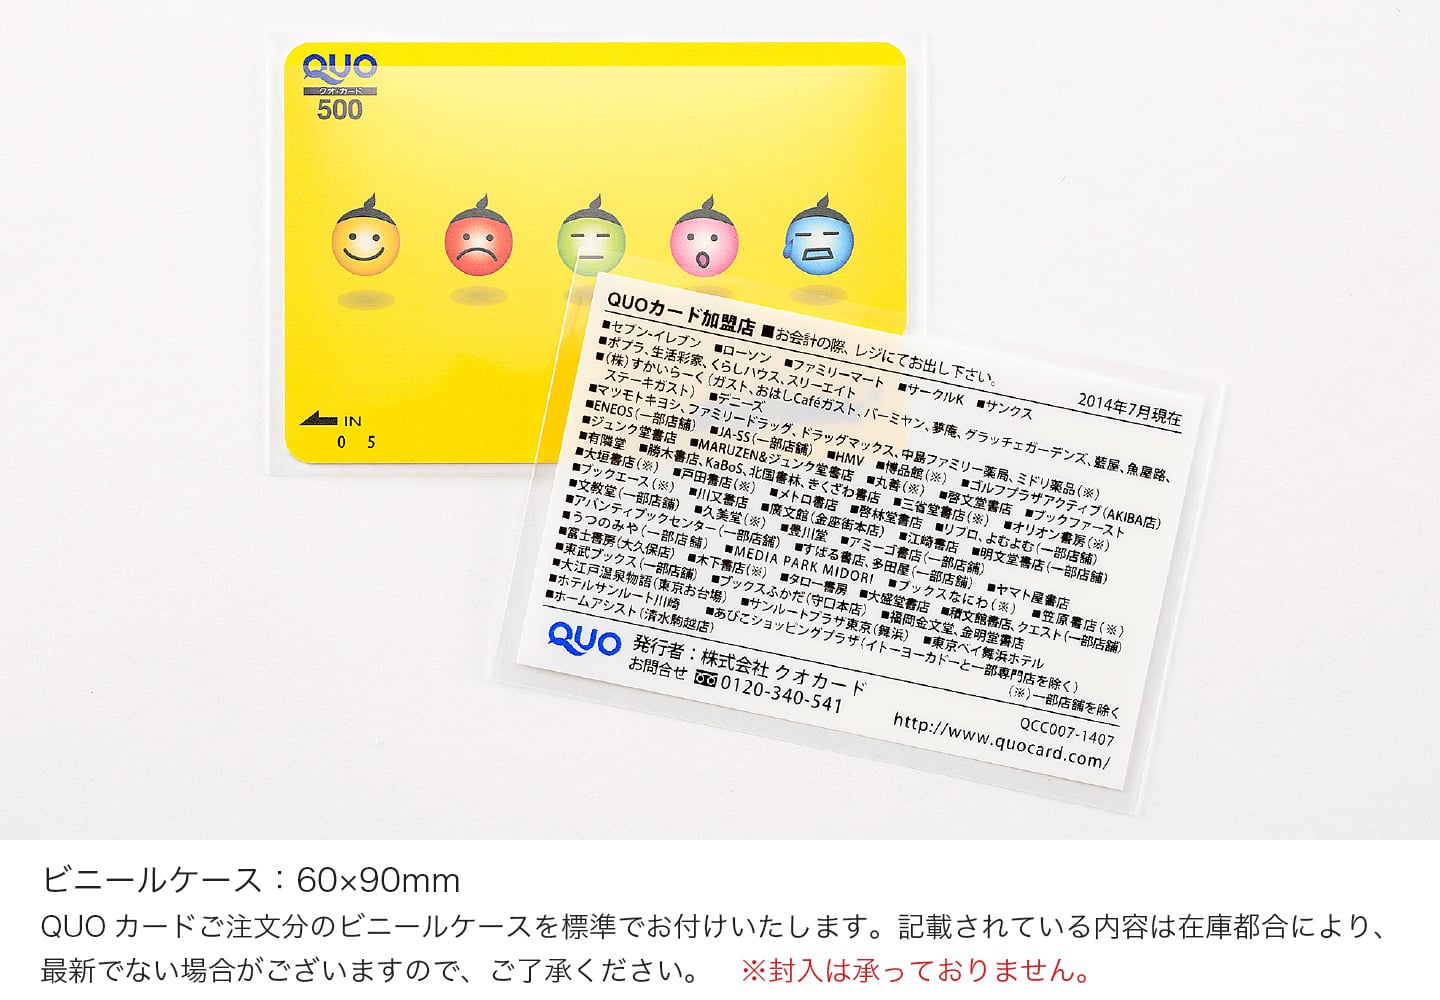 ビニールケース：60×90mm QUOカードご注文分のビニールケースを標準でお付けいたします。記載されている内容は在庫都合により、最新でない場合がございますので、ご了承ください。※封入は承っておりません。